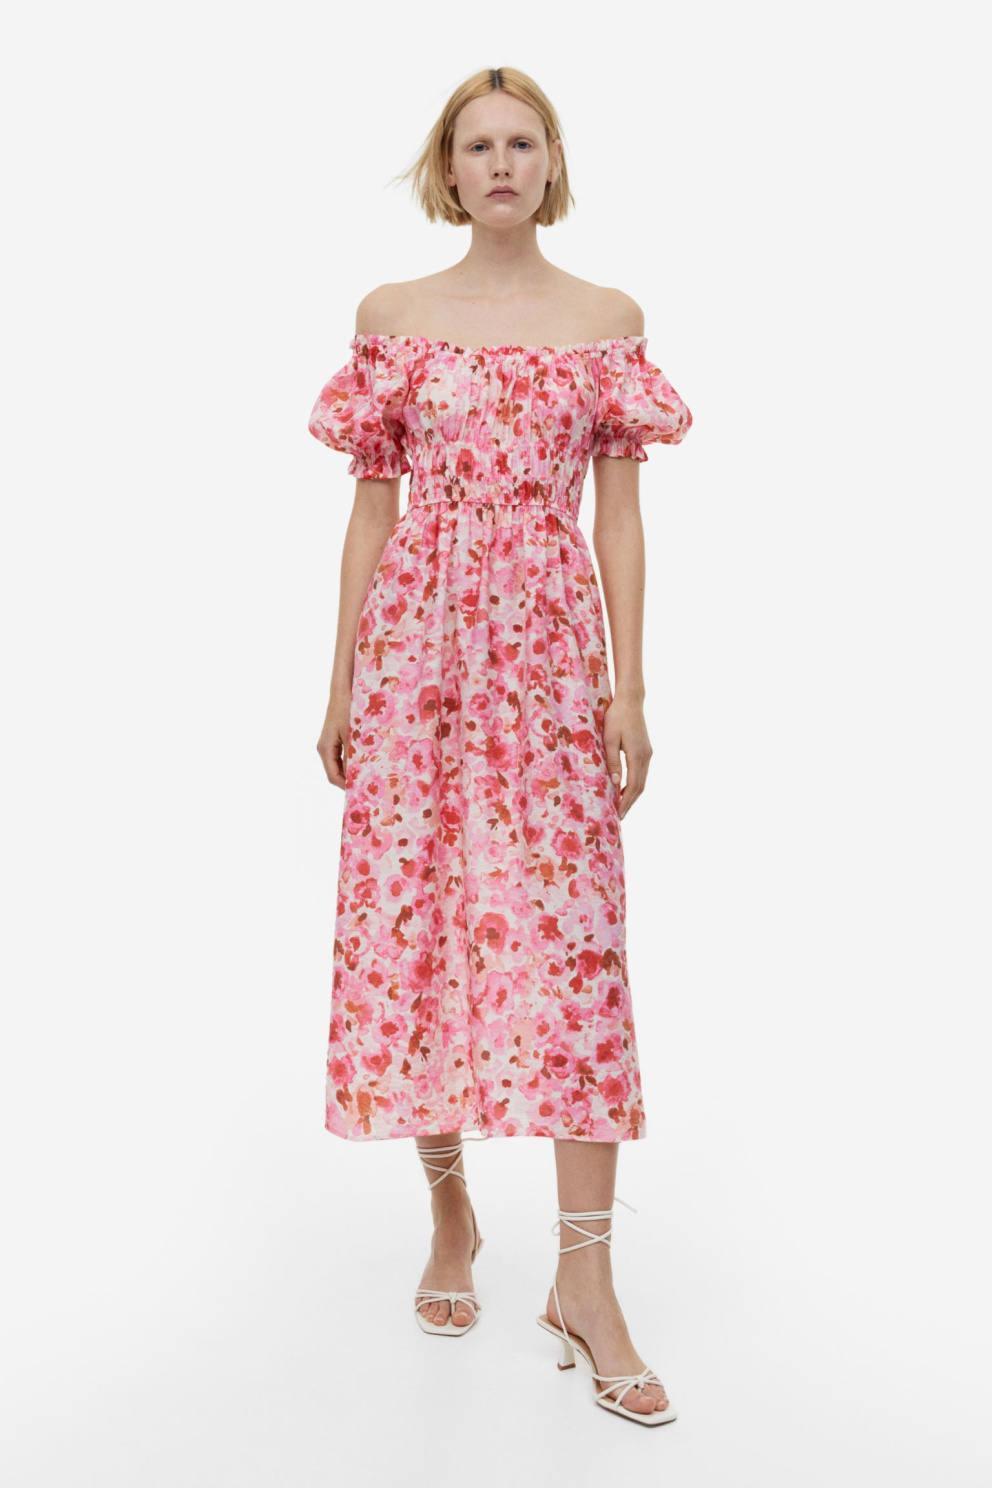 Šaty s odhalenými rameny, H&M, 899 Kč